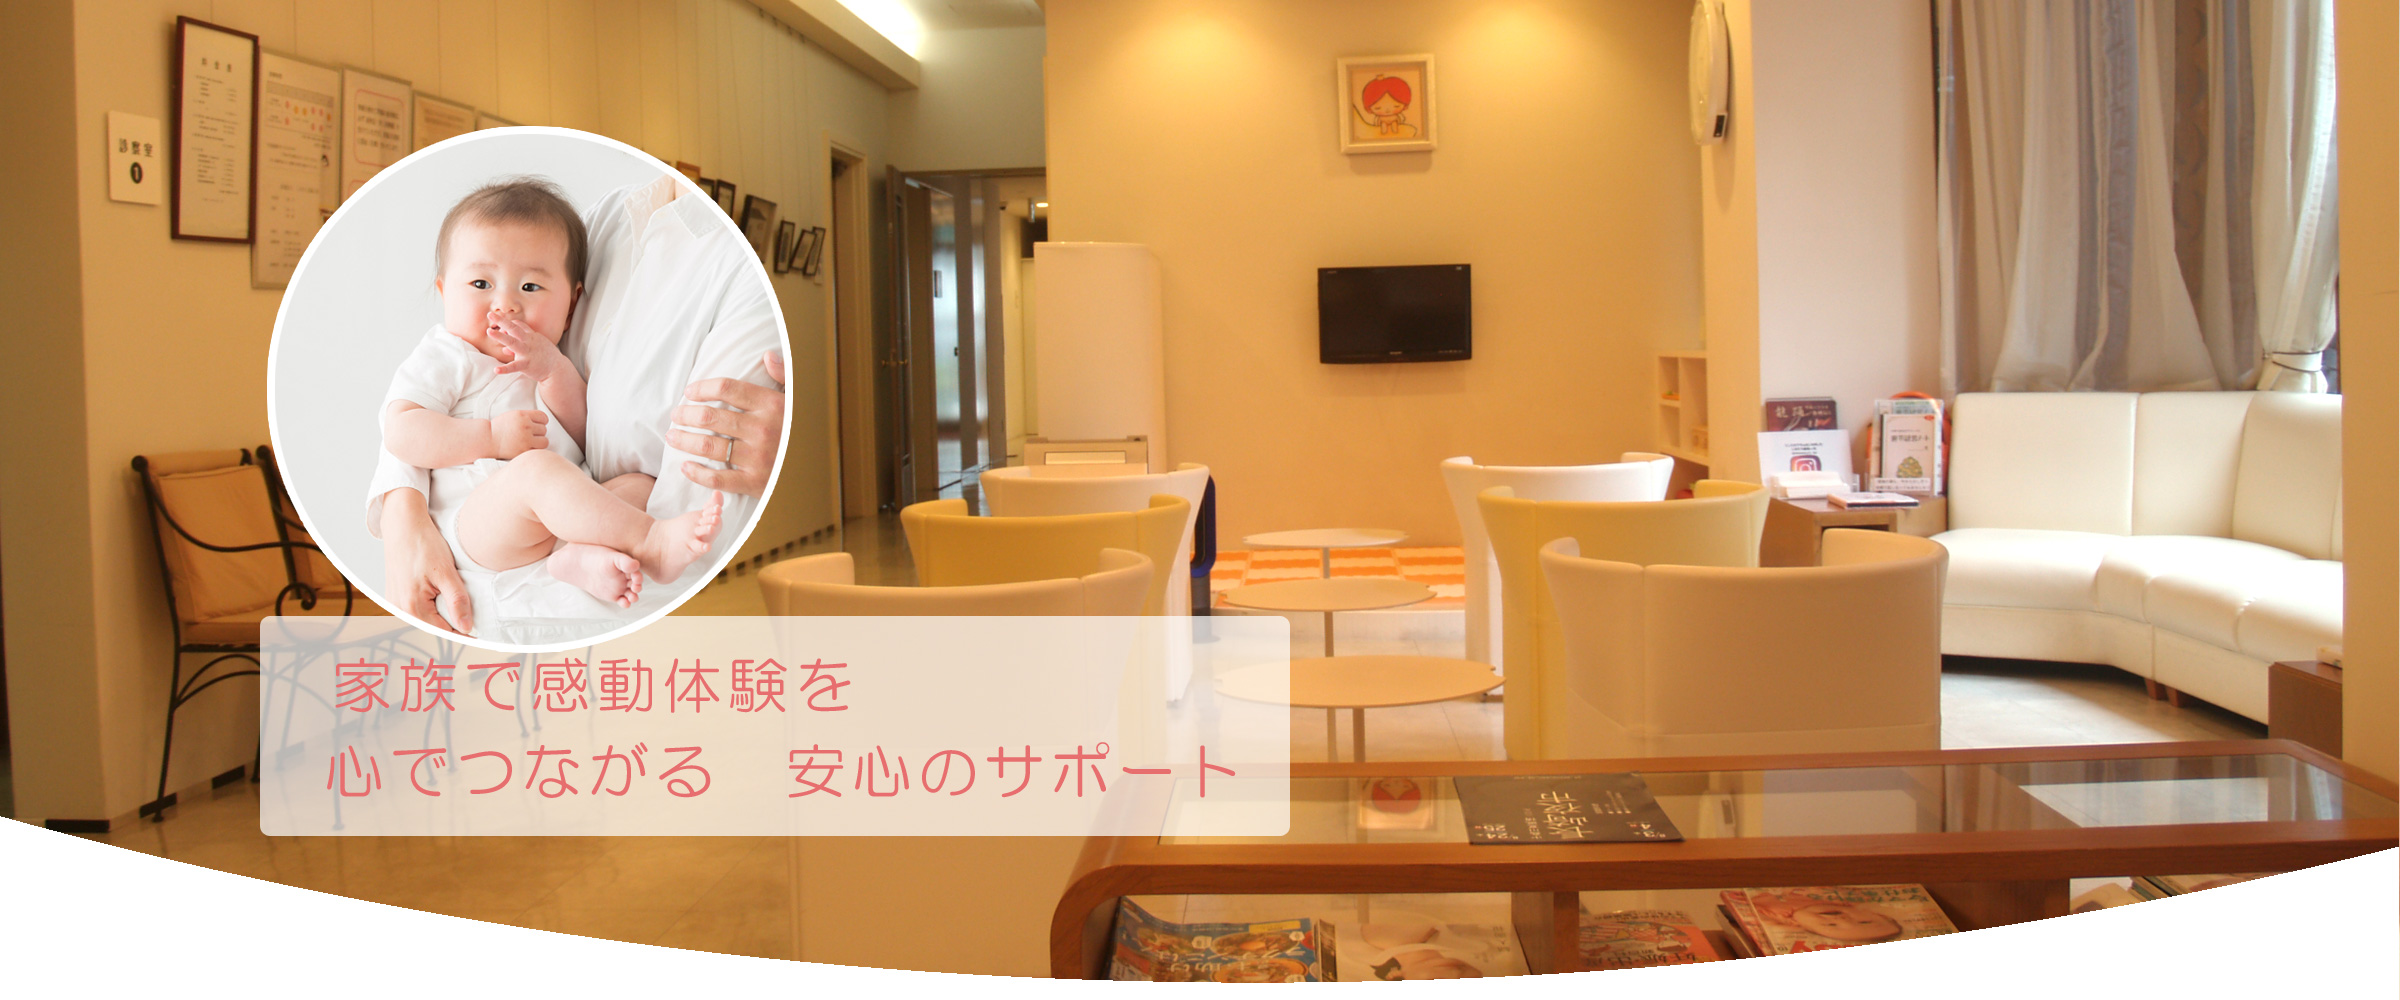 長崎市の産婦人科 しもむら産婦人科 公式 オフィシャルサイト